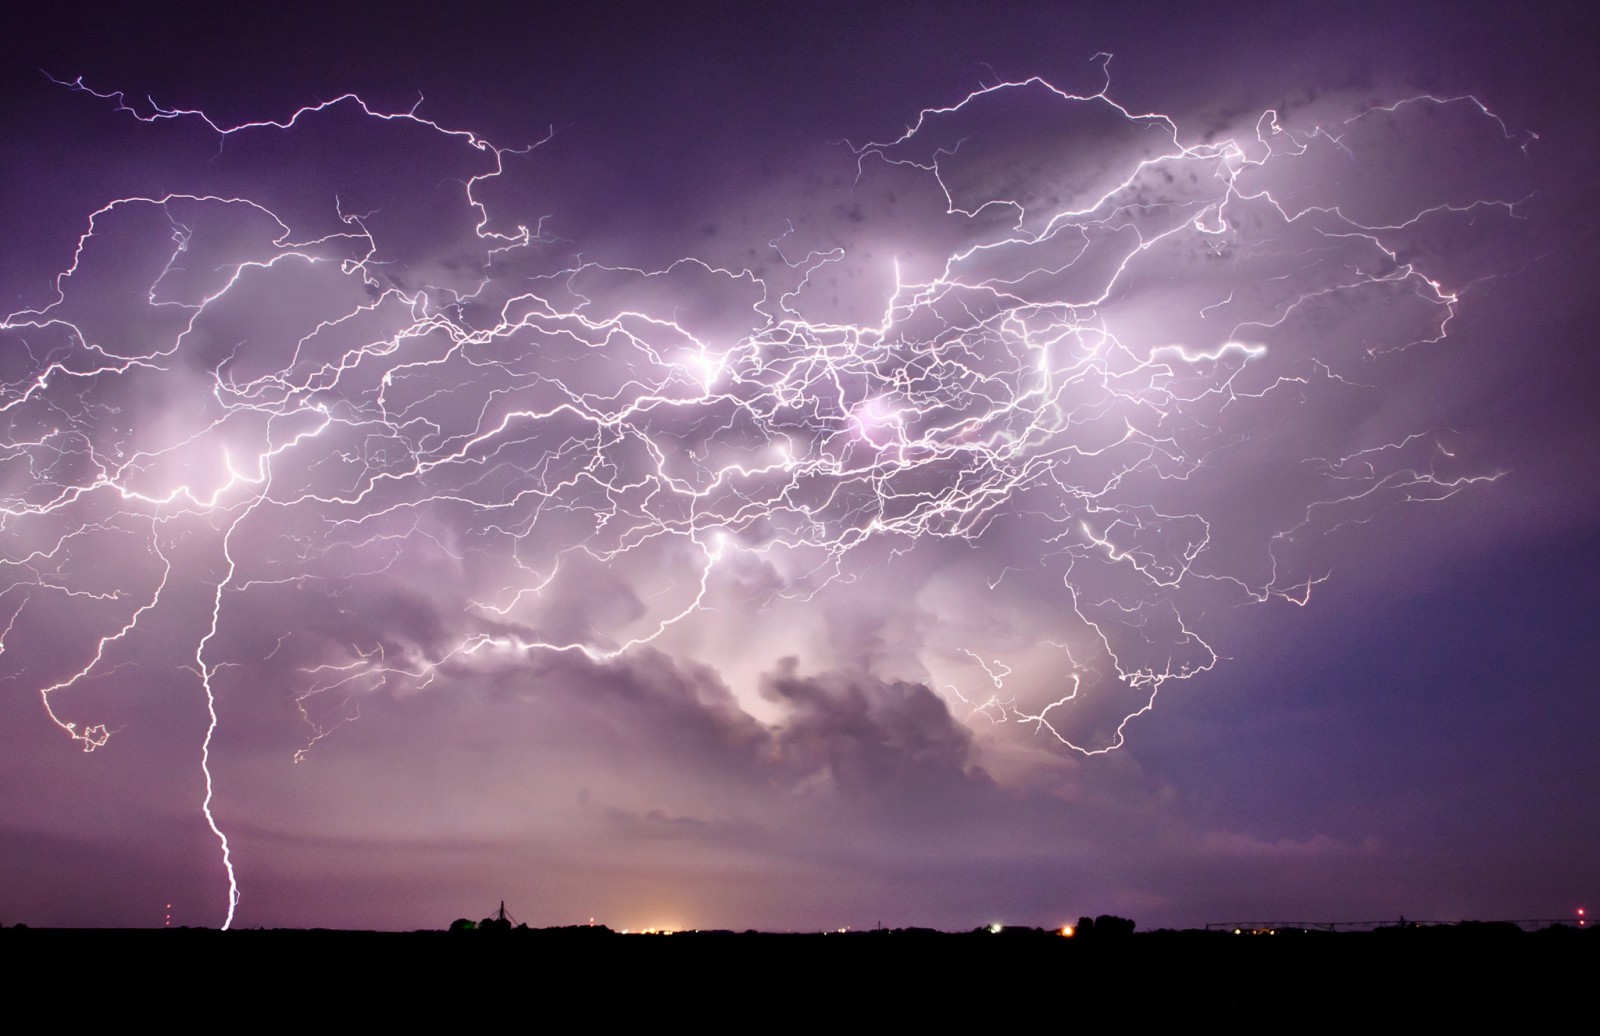 20 Εκπληκτικές φωτογραφίες από τον μεγαλύτερο κυνηγό καταιγίδων. Εντυπωσιακές. - Εικόνα 1